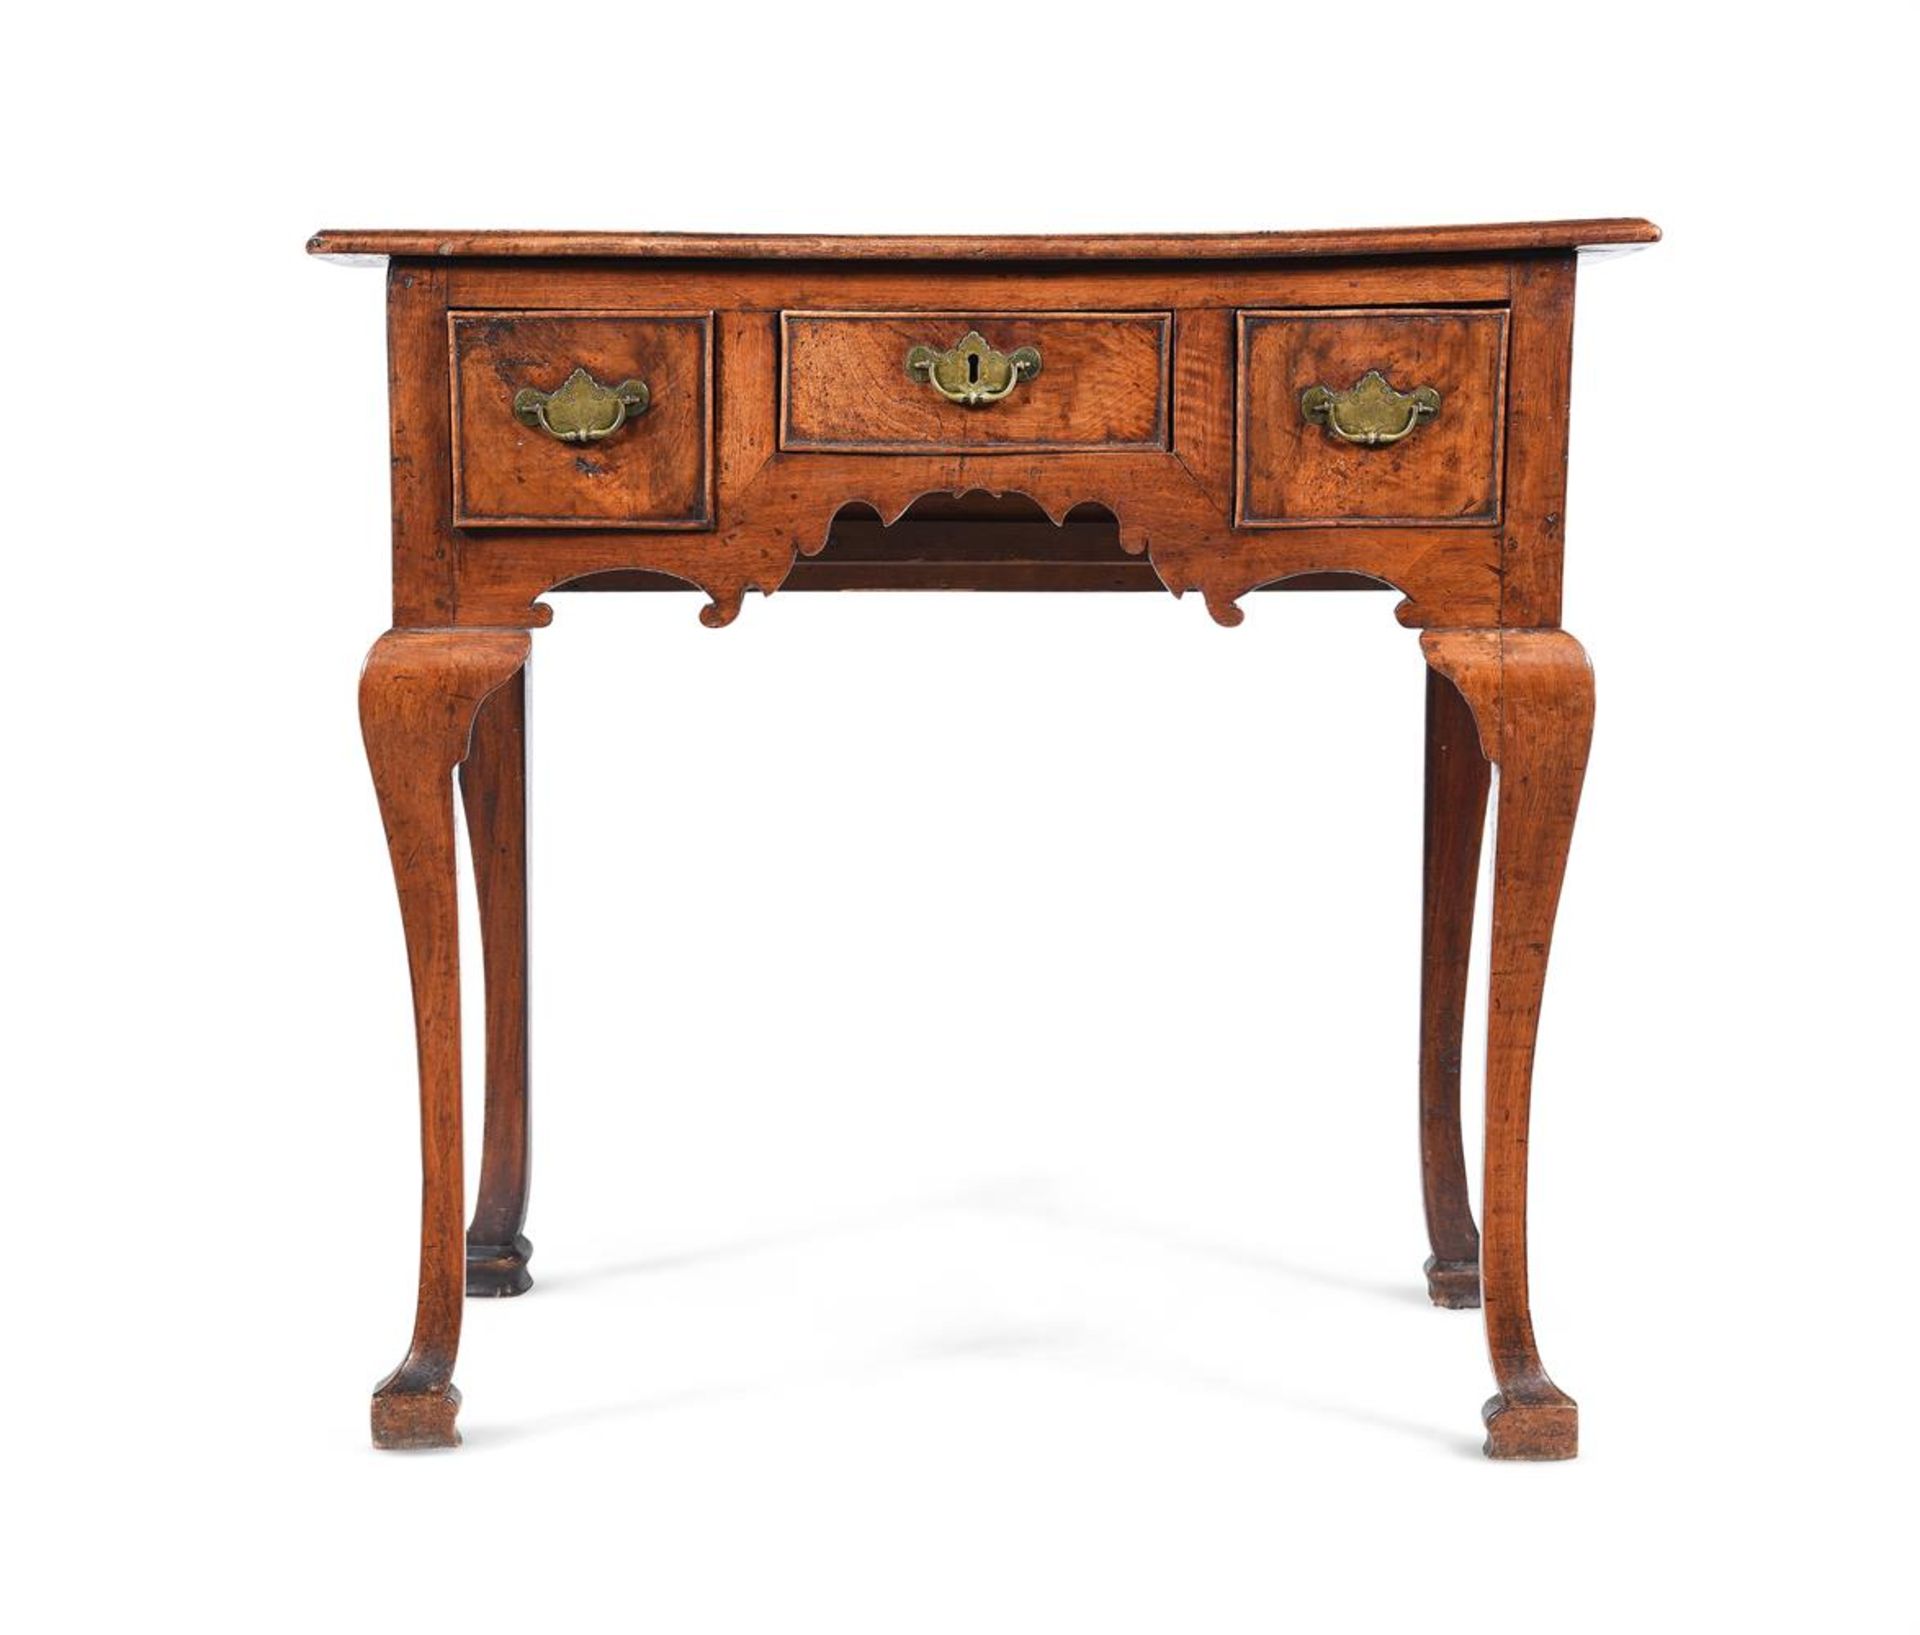 A QUEEN ANNE WALNUT SIDE TABLE, CIRCA 1710